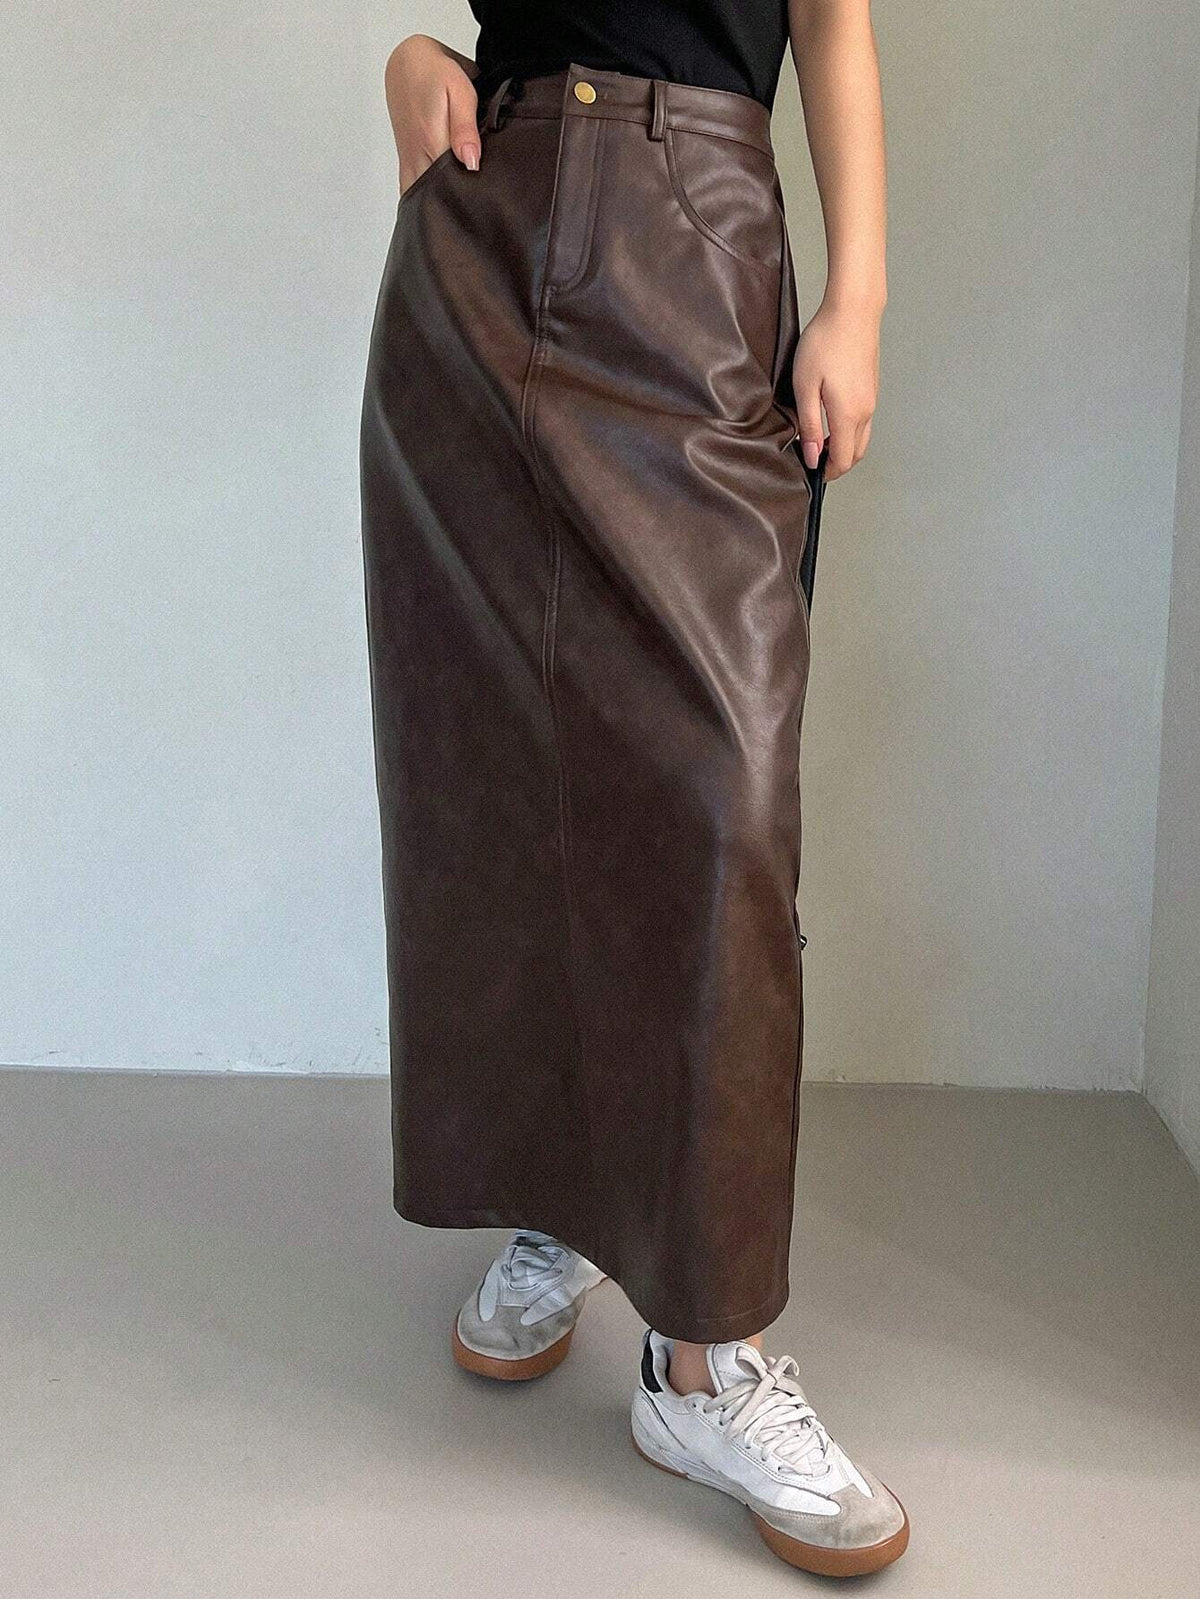 DAZY Women's Pu Leather Midi Skirt With Pockets